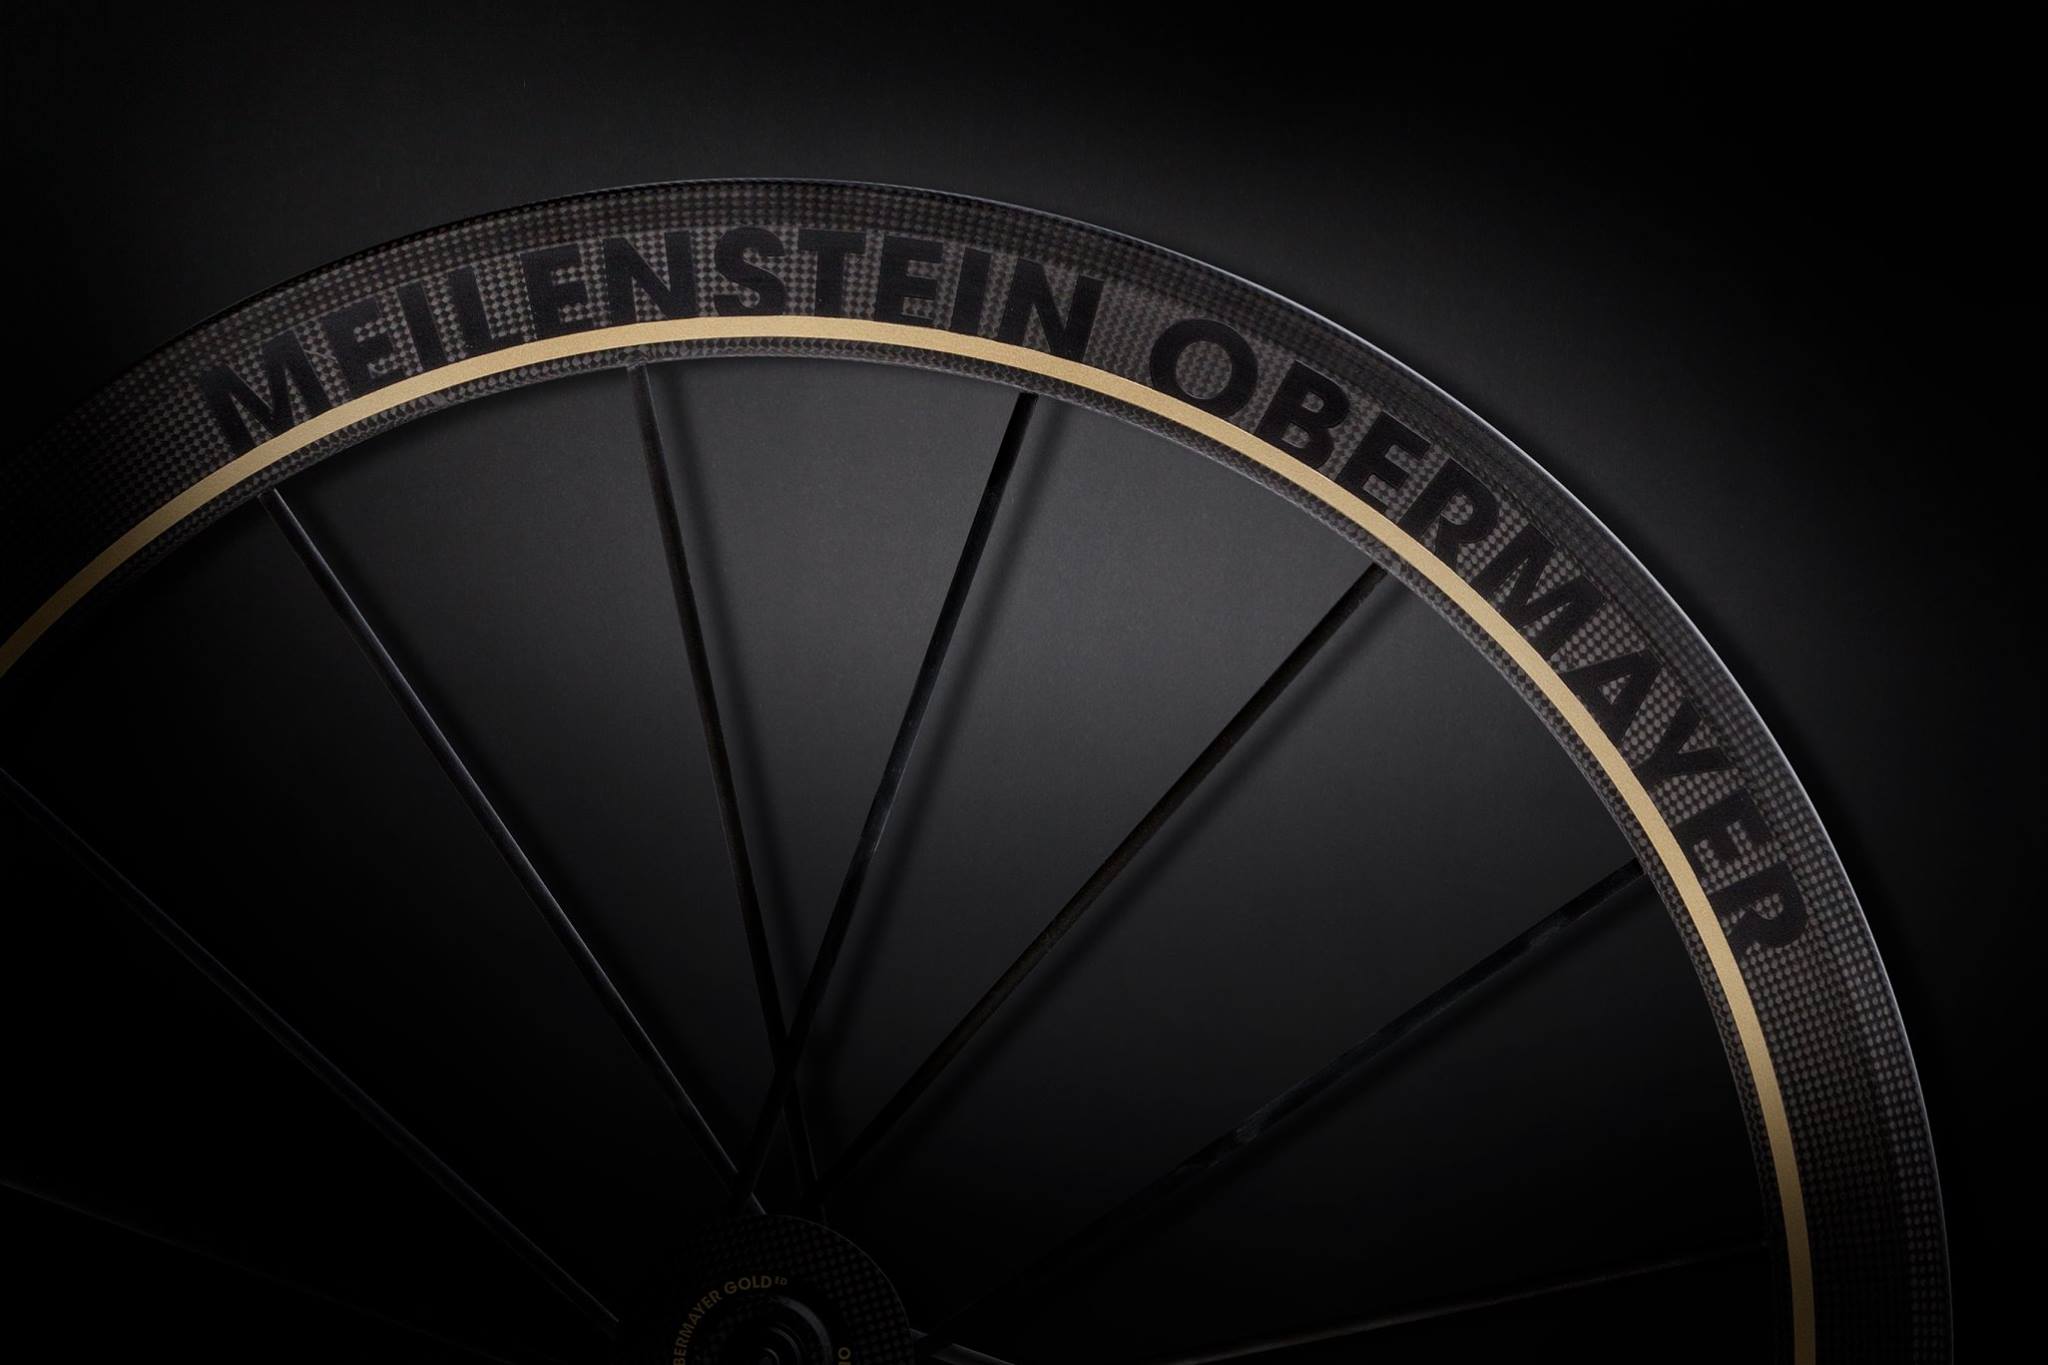 Lightweight unveils new Obermayer Gold Limited Edition Meilenstein wheels